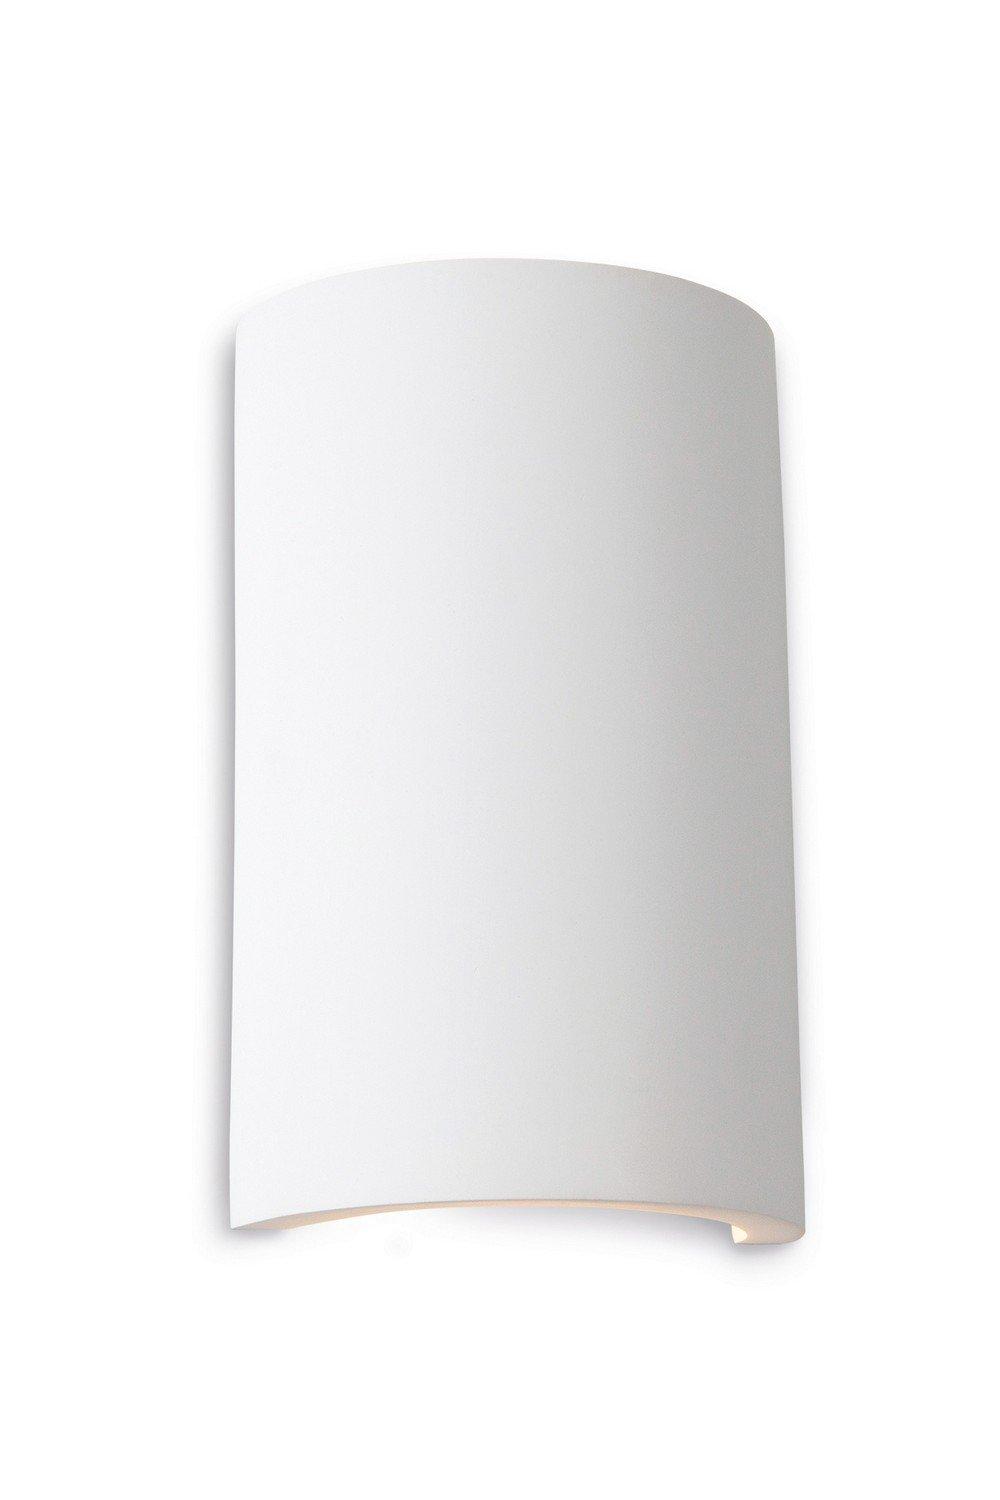 Gallery LED 2 Light Round Plaster Indoor Wall Light White White